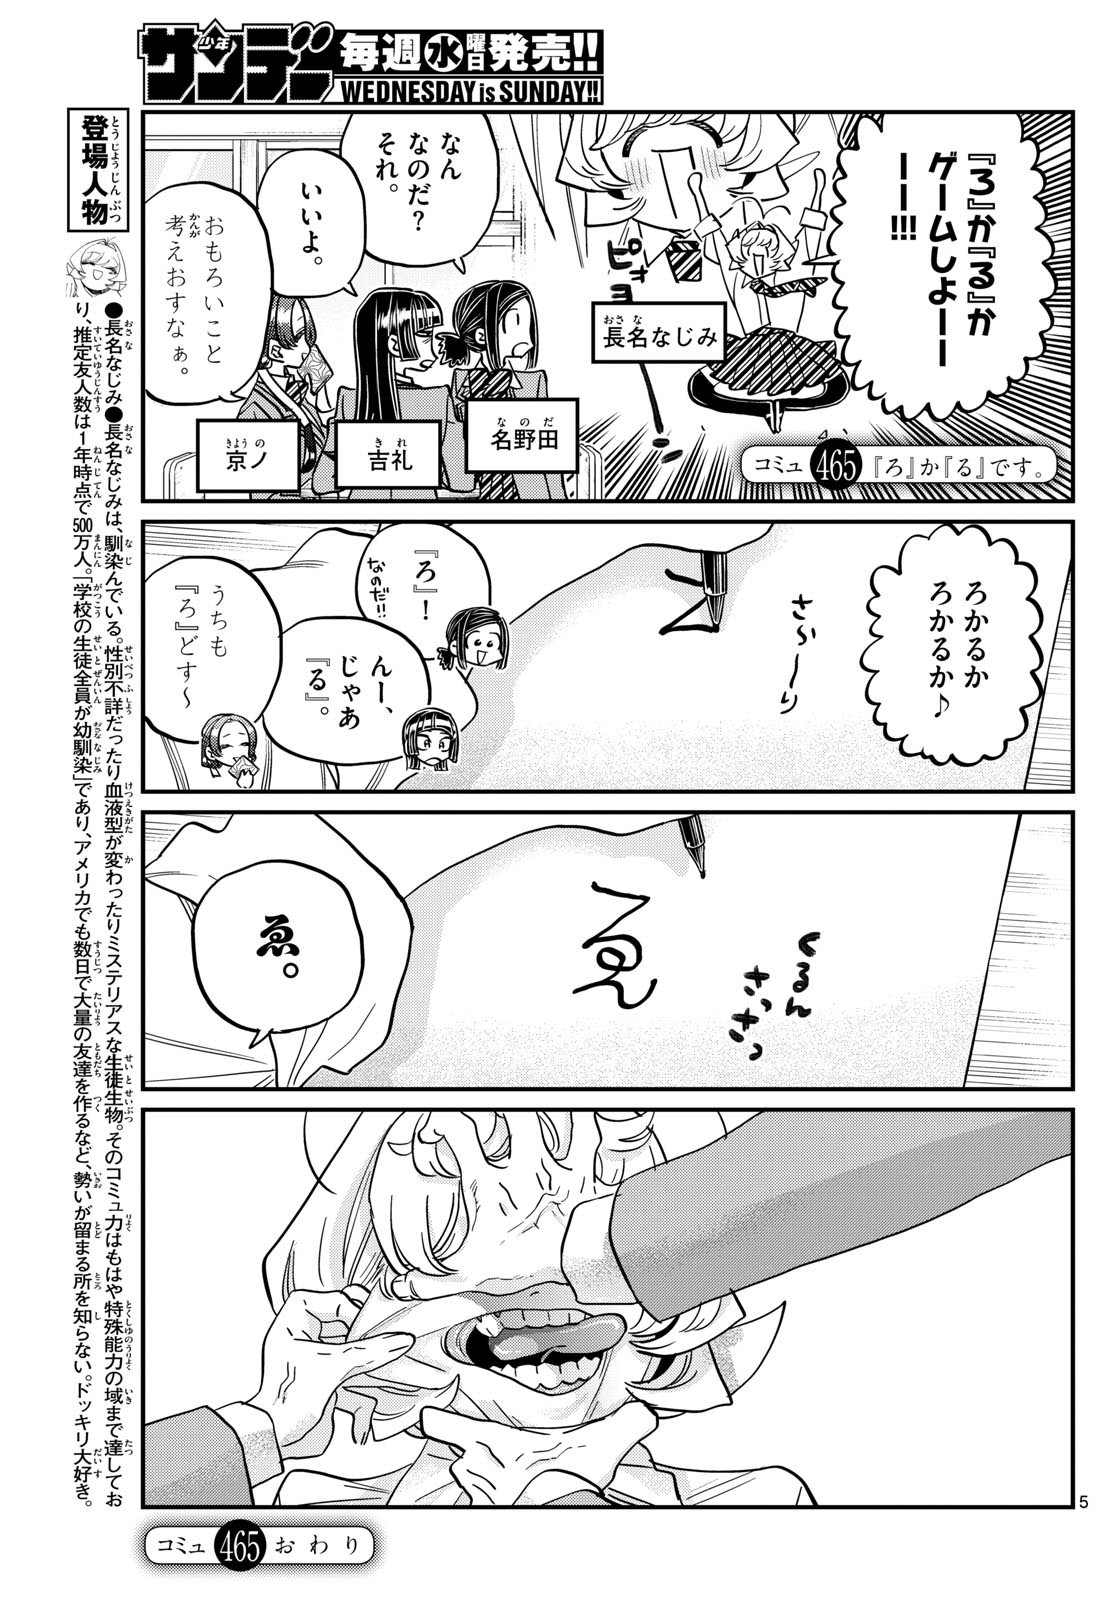 Komi-san wa Komyushou Desu - Chapter 465 - Page 1